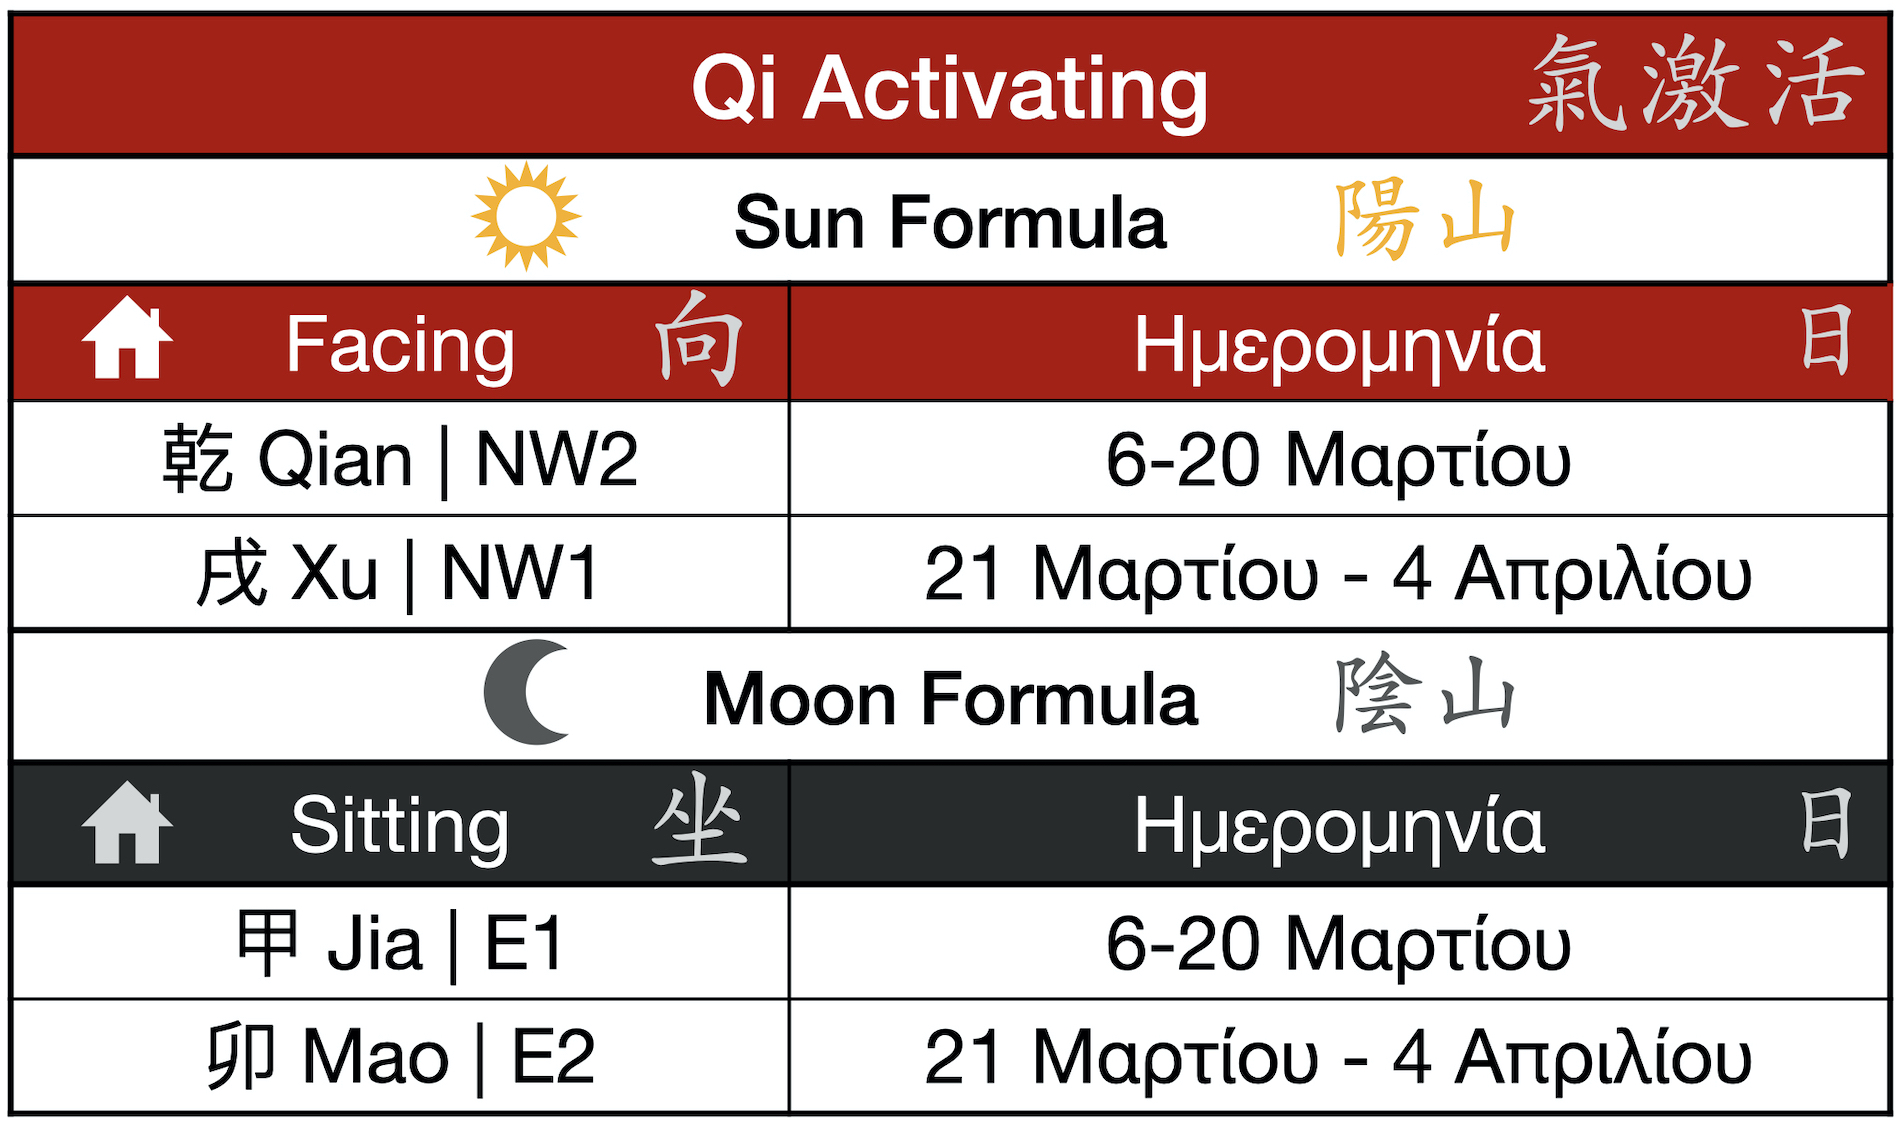 Ενεργοποίηση του Qi Μάρτιος 2021 - Qi Activating